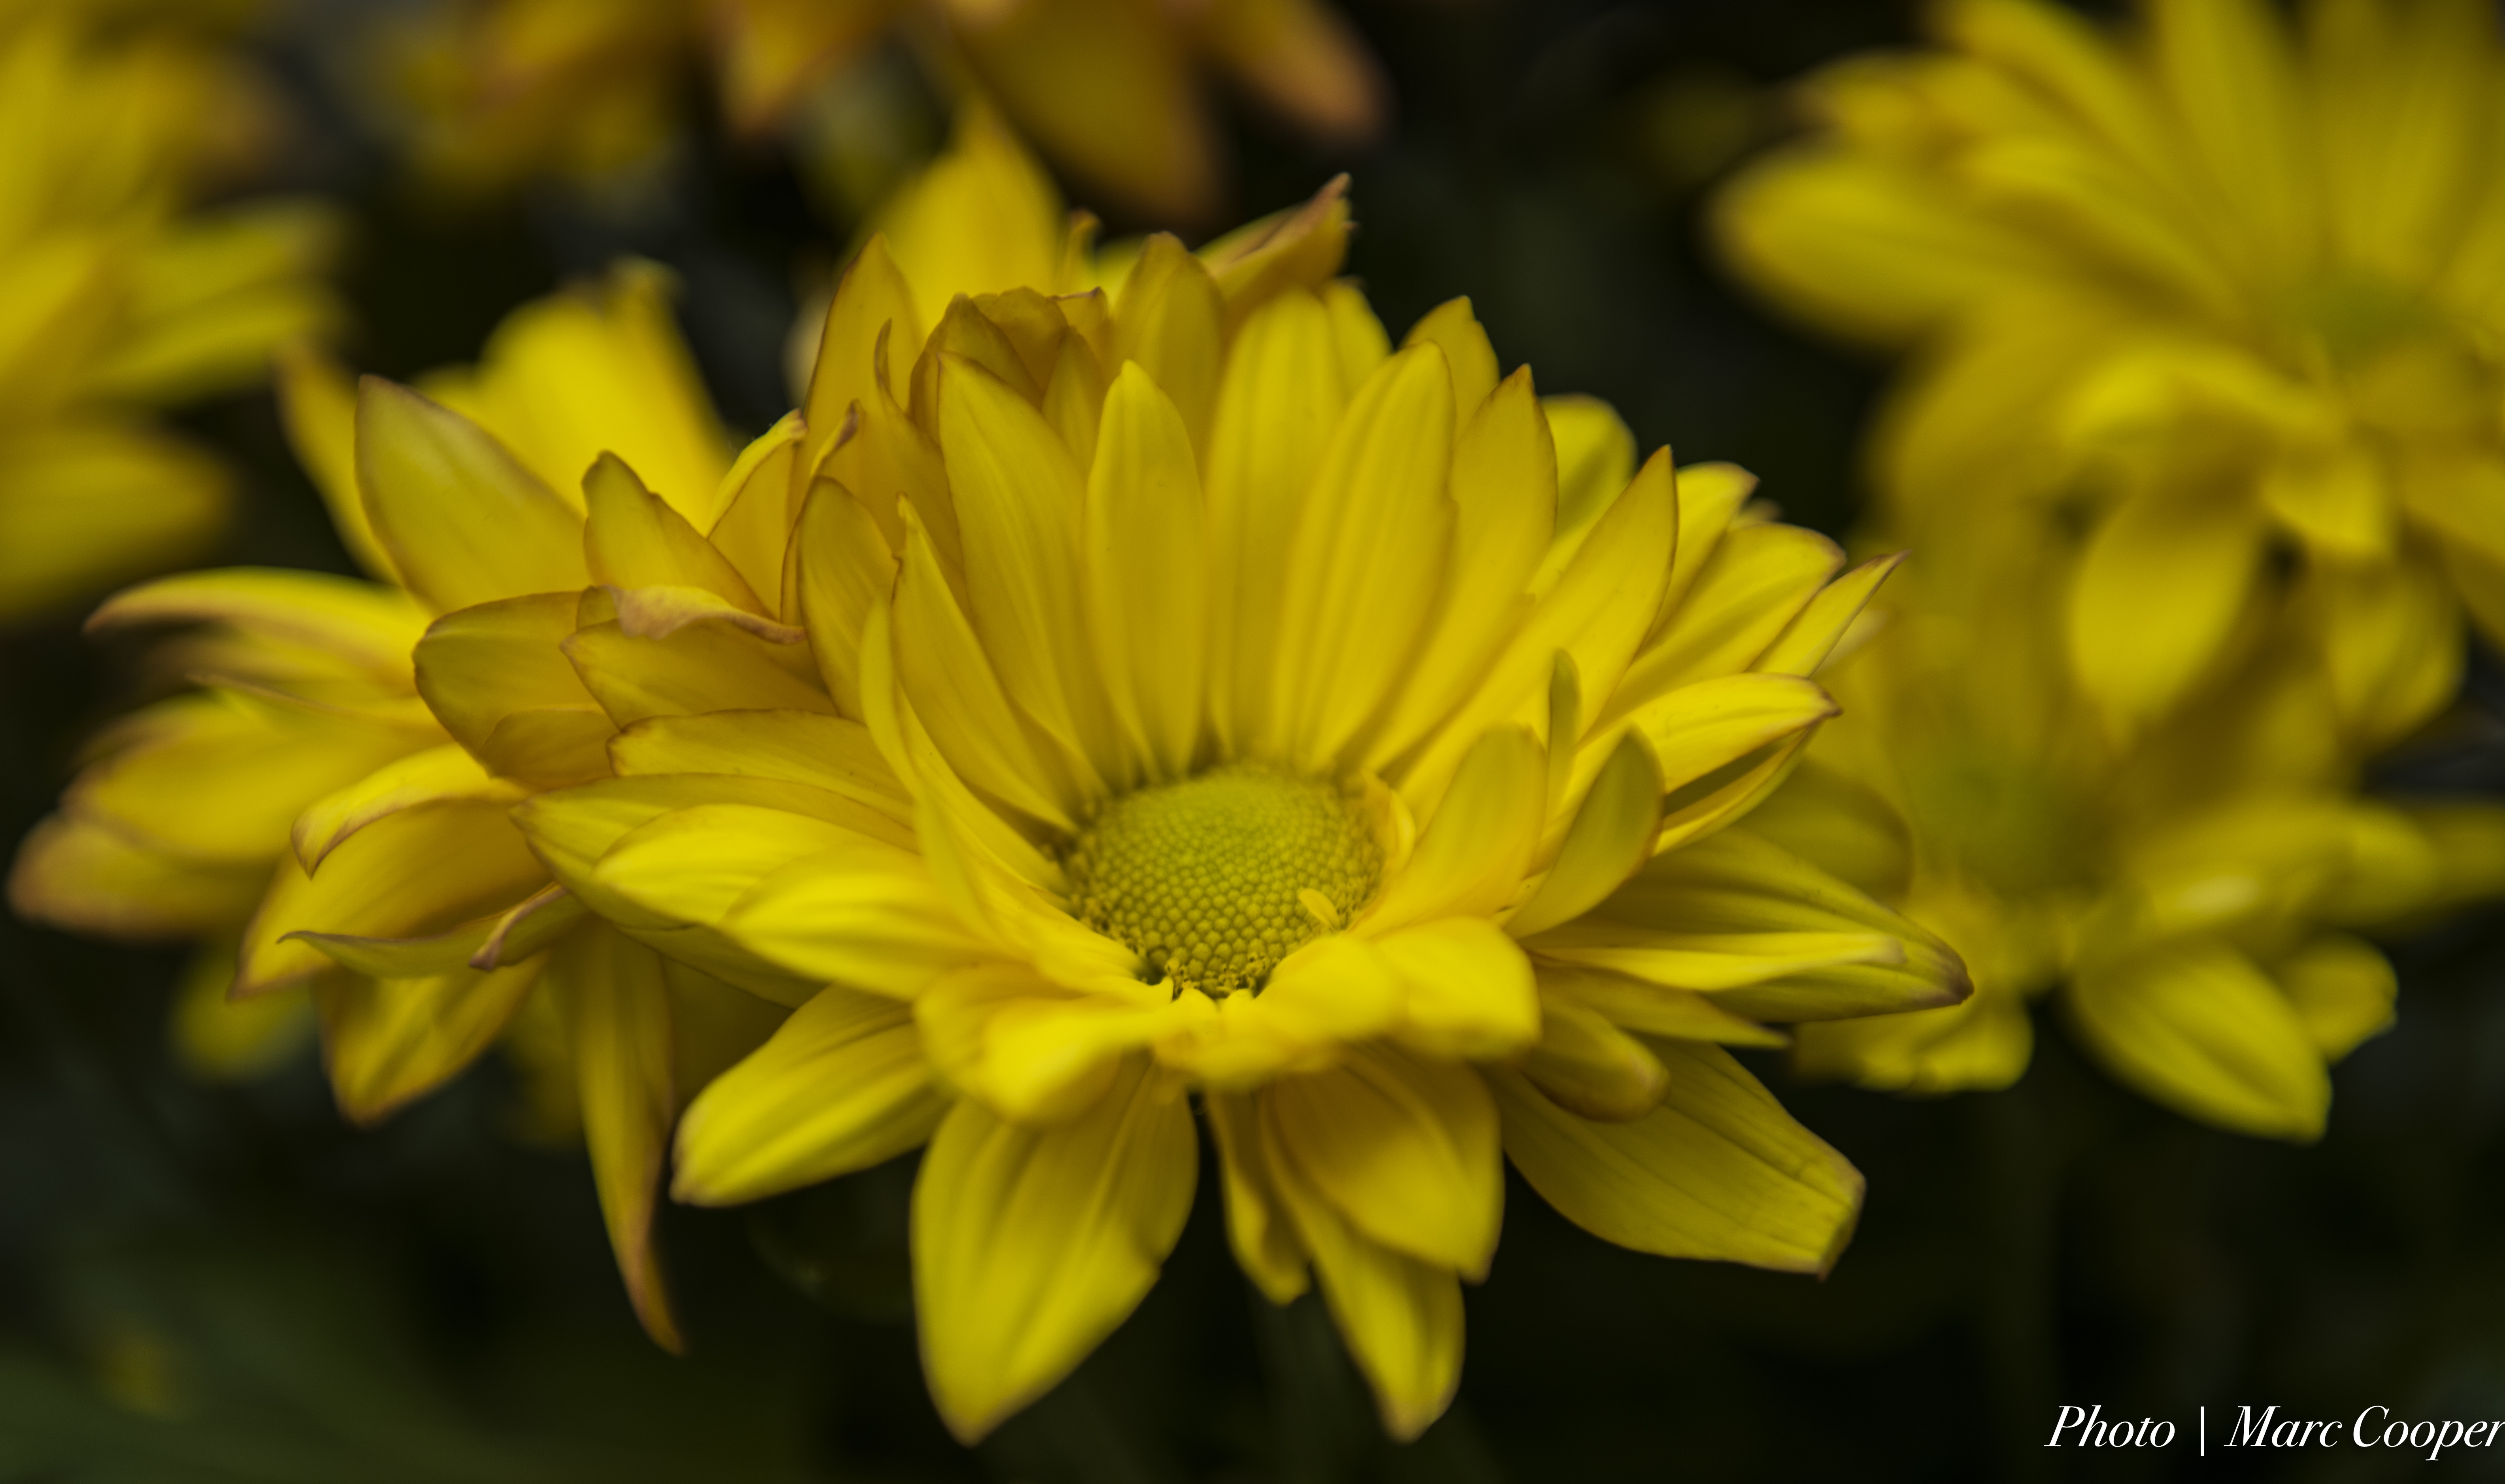 yellow daisy close up